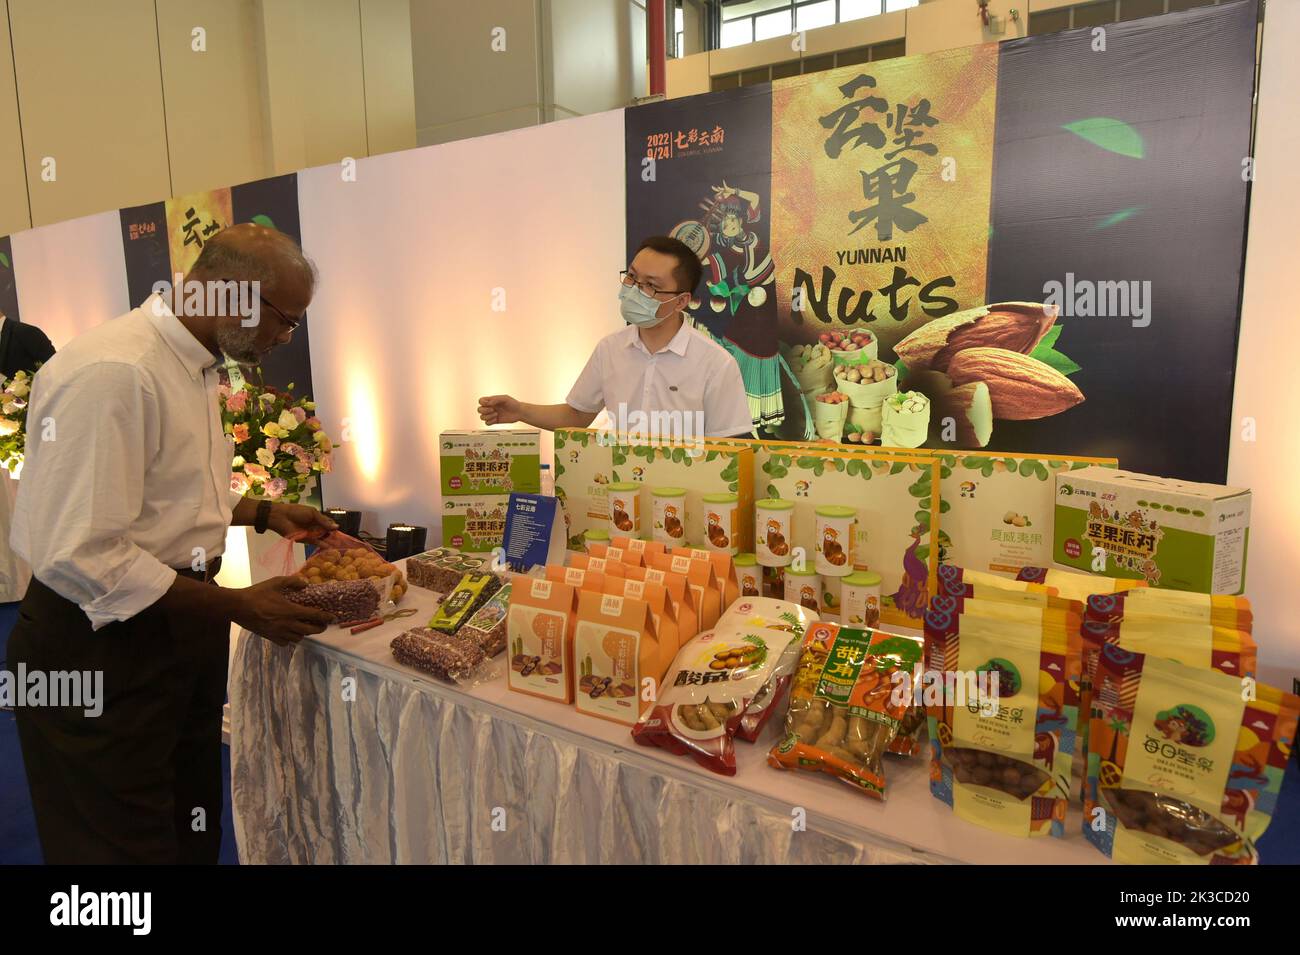 (220926) -- DHAKA, le 26 septembre 2022 (Xinhua) -- Un visiteur regarde les produits à base de noix lors de l'exposition haute en couleur du Yunnan à Dhaka, au Bangladesh, le 24 septembre 2022. L'exposition, qui s'est tenue samedi au Bangabandhu Bangladesh-China Friendship Exhibition Centre à Dhaka, a présenté la culture locale, le patrimoine et une variété de produits, y compris des fruits, des noix et des fleurs. (Xinhua) Banque D'Images